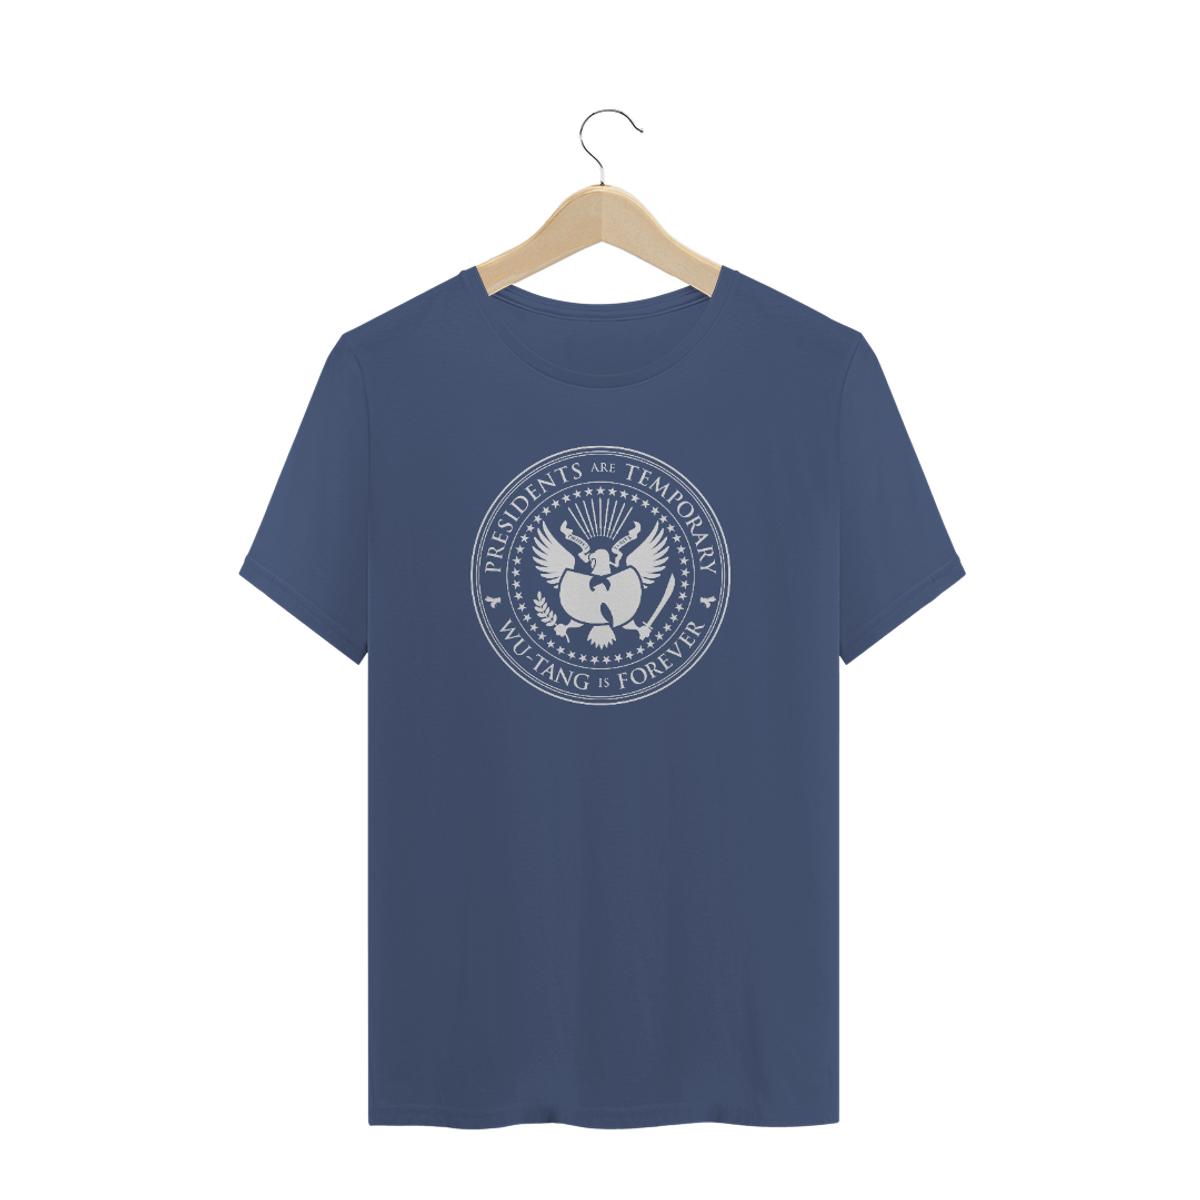 Nome do produto: Camiseta de Malha ESTONADA Pré-Lavada Wu Tang Clan Presidents Are Temporary Marinho